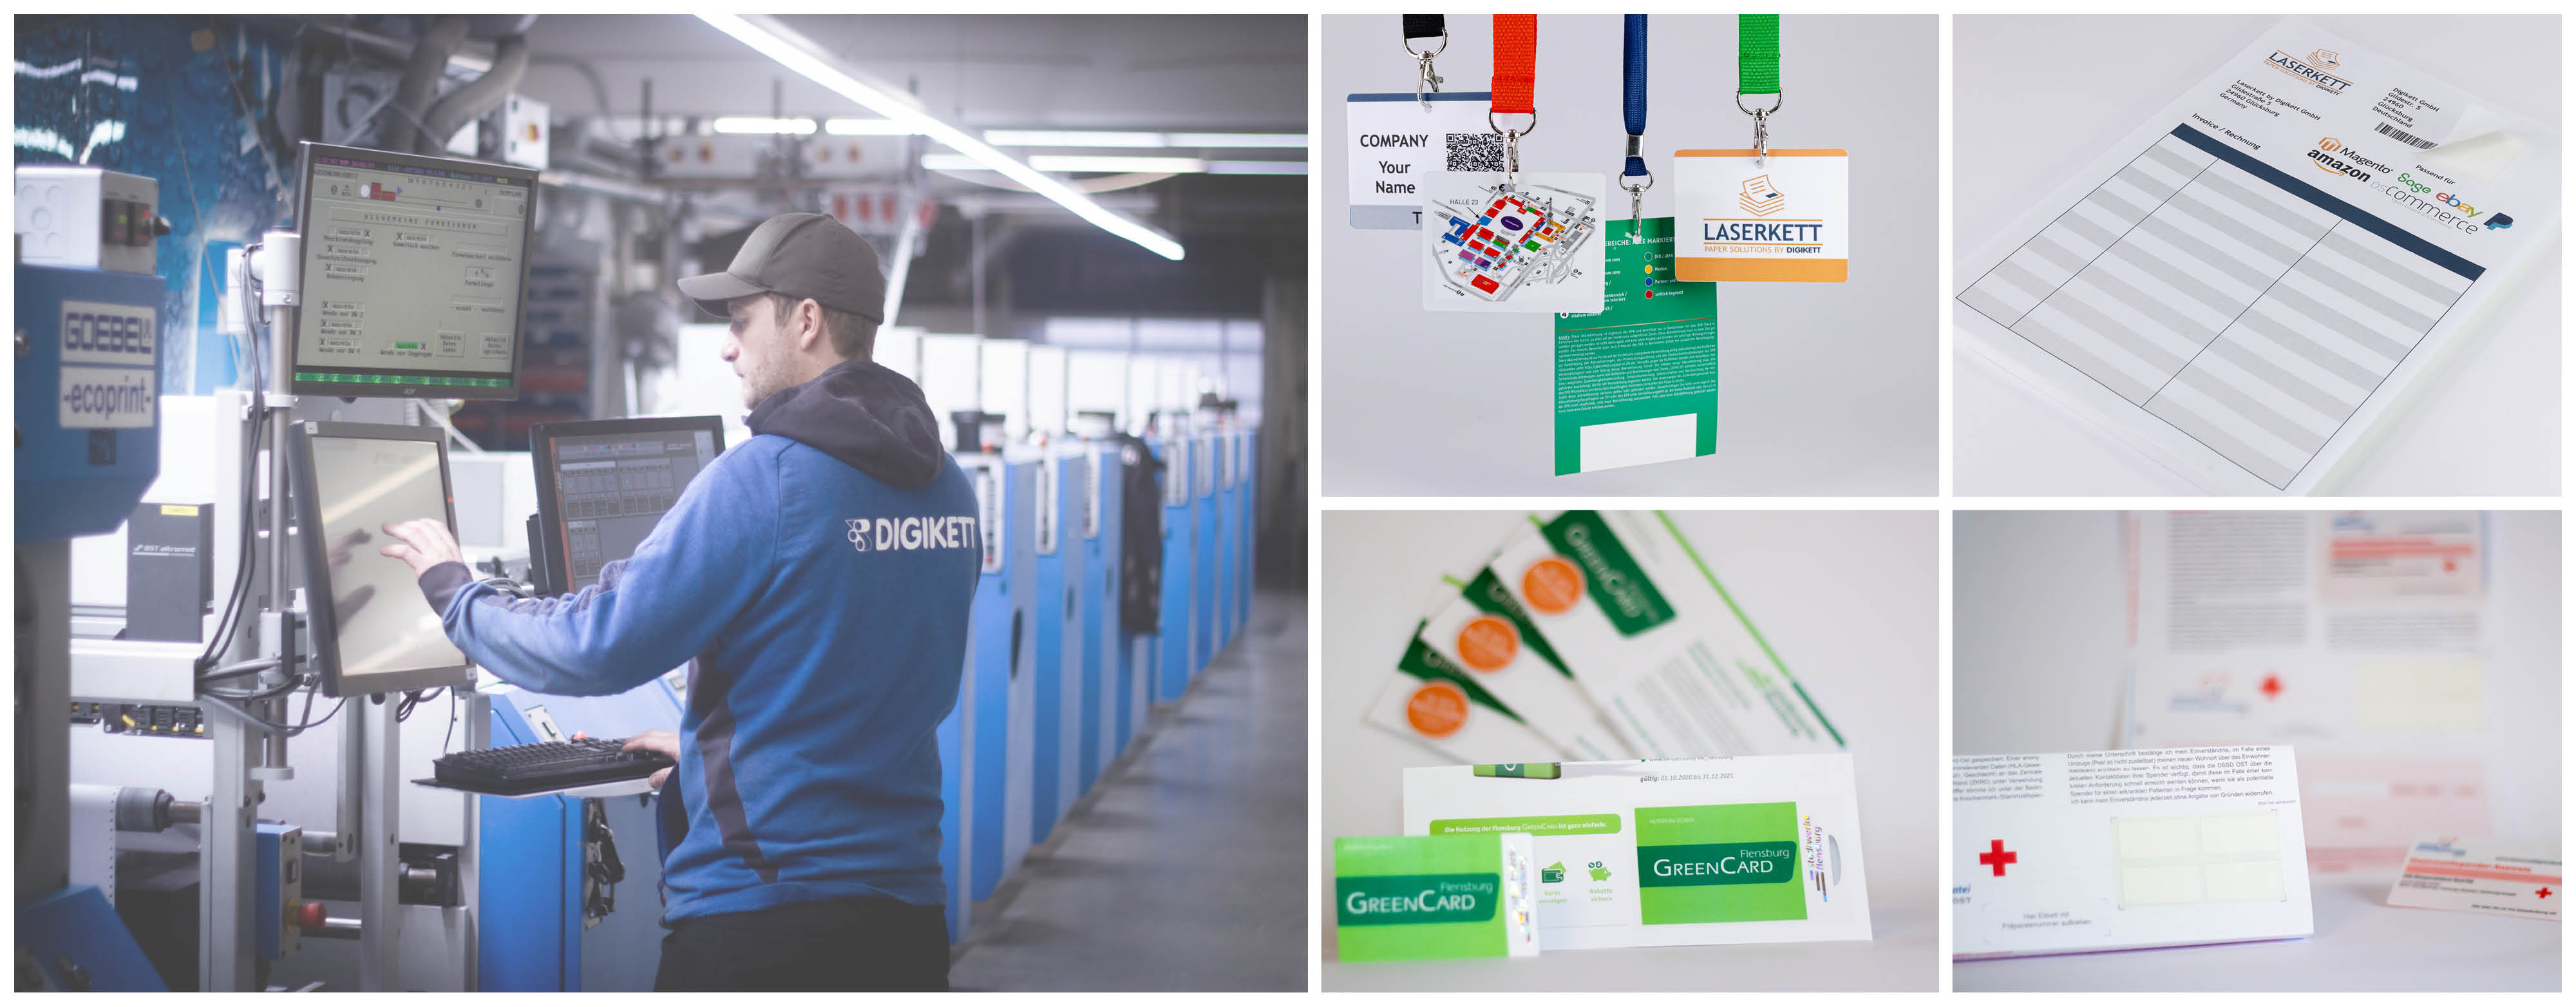 Laserkett Paper solutions mit Integrierten Etiketten und Karten zum drucken - Online Shop